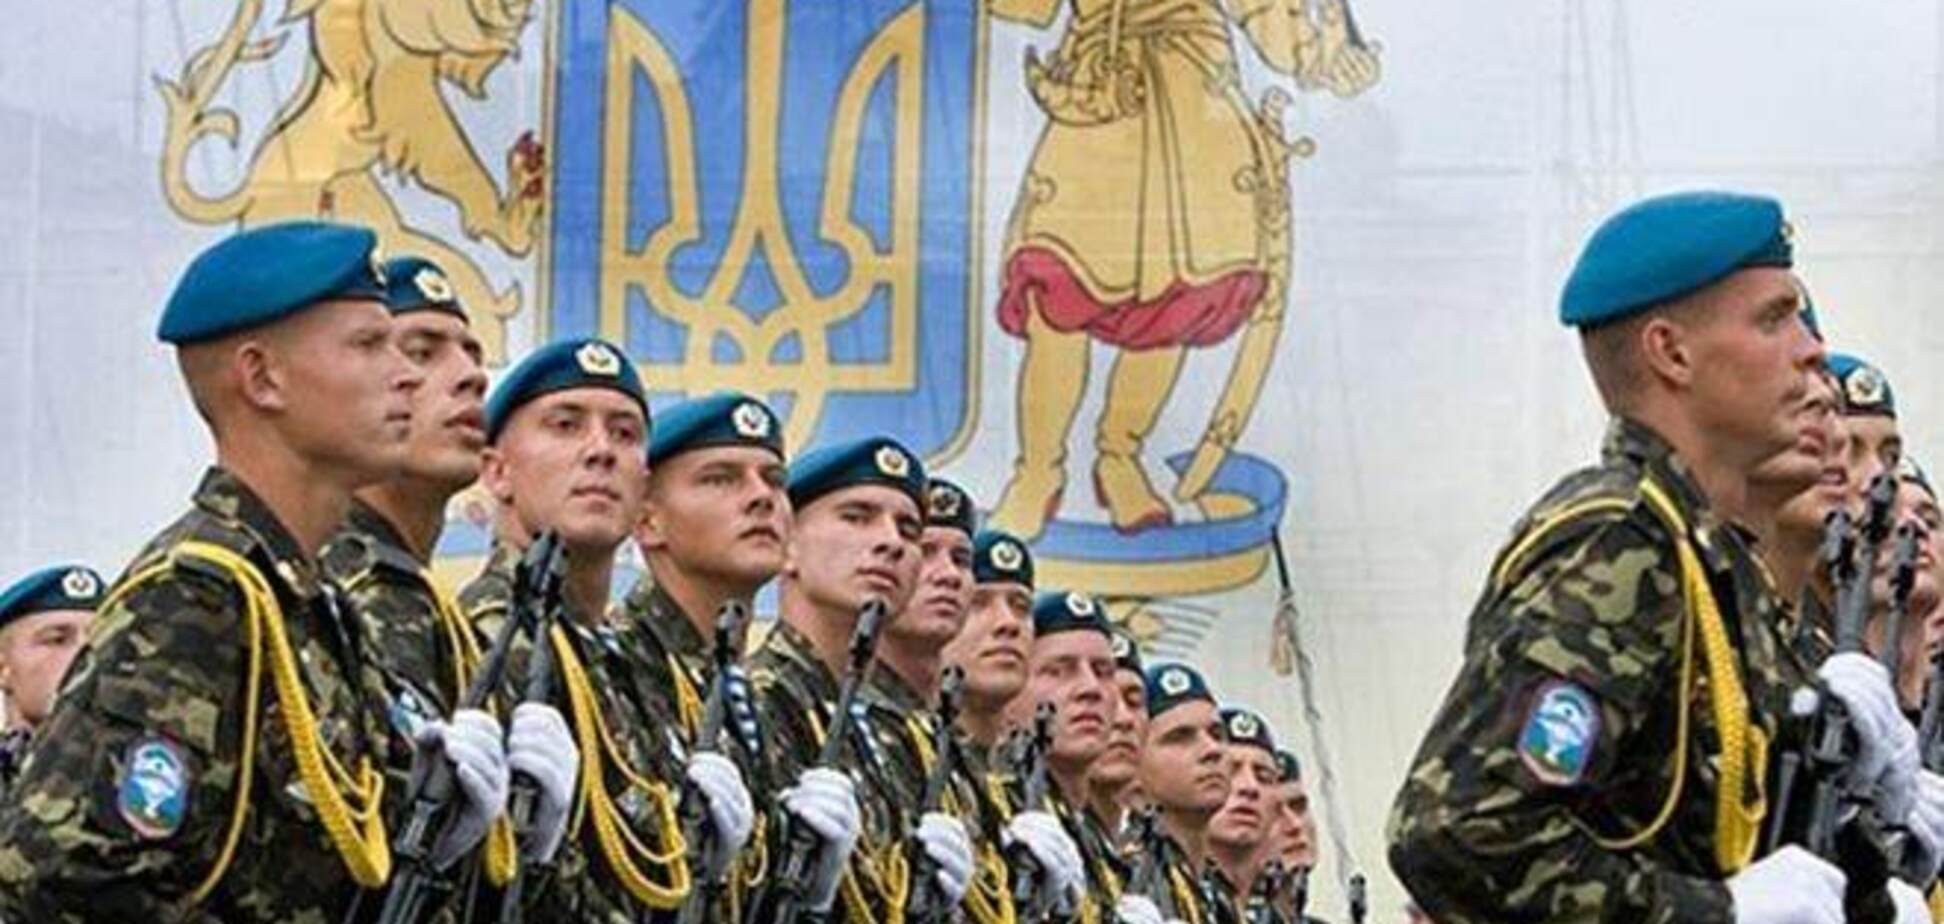 Украинские военные в Крыму оружие не сложат - Минобороны